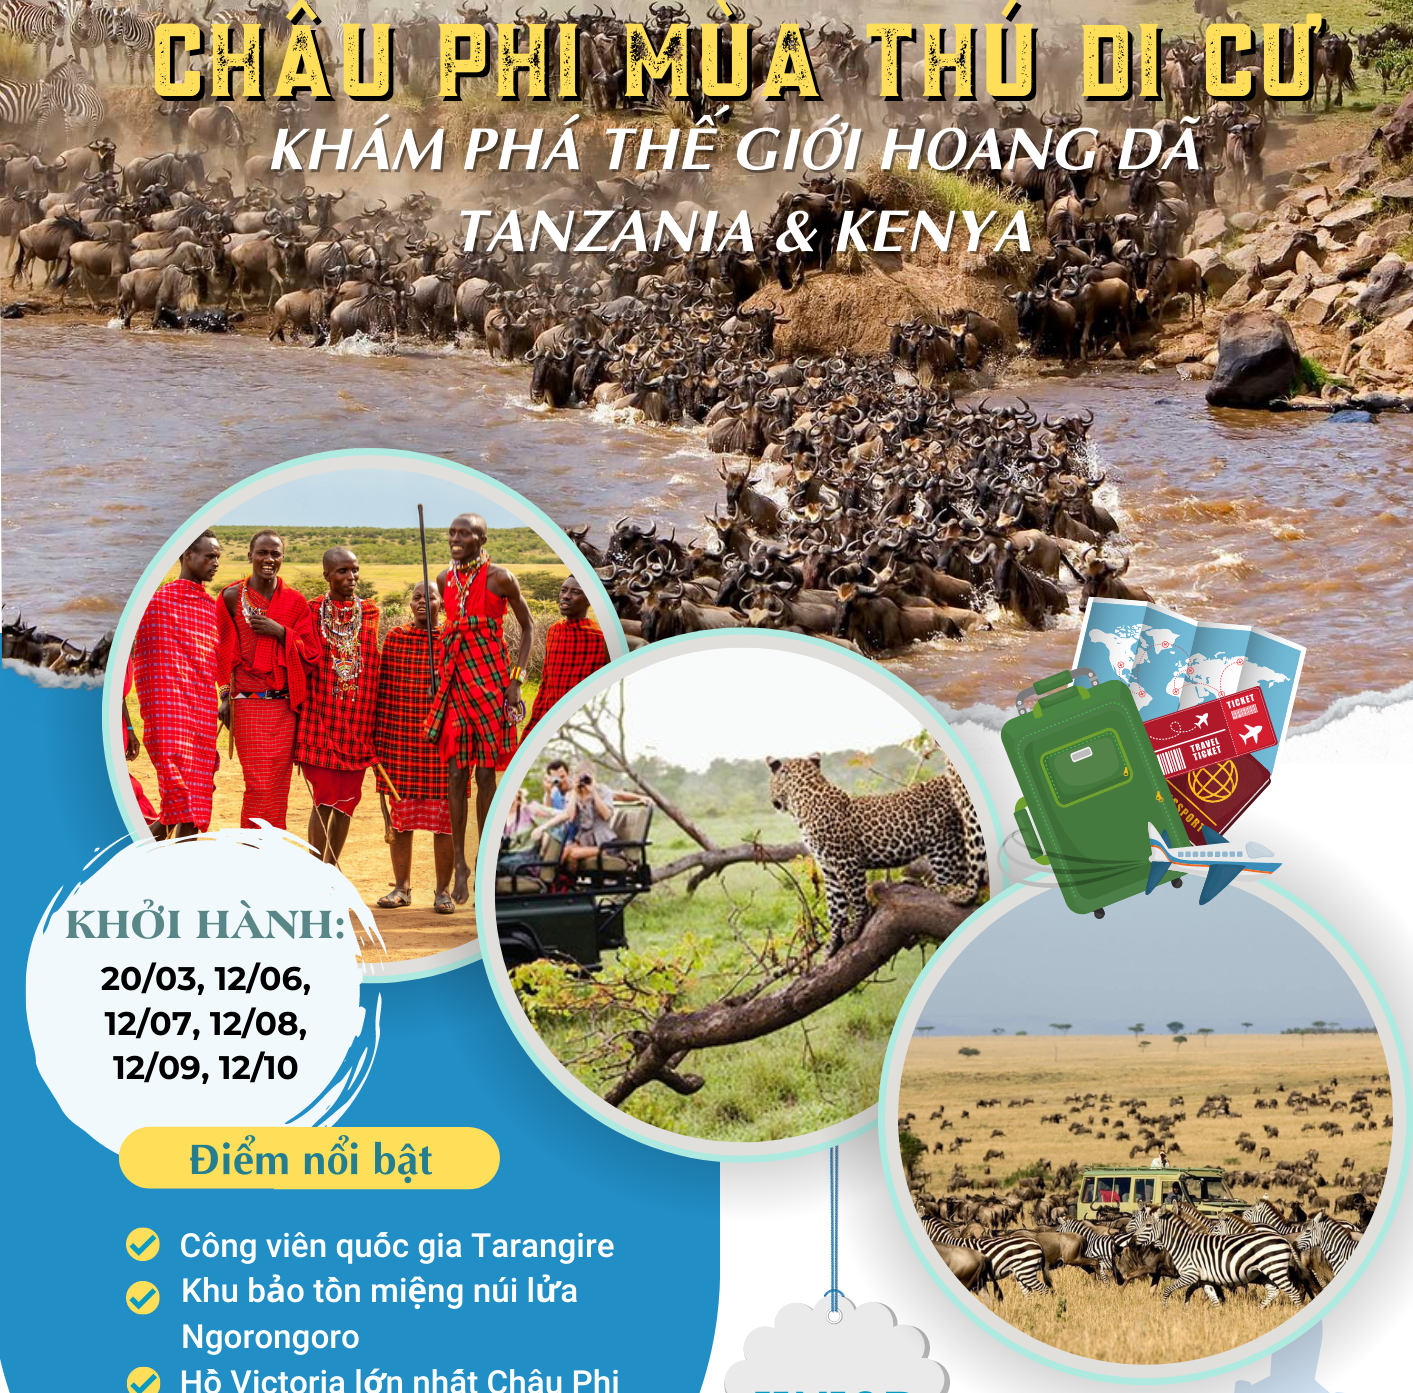 Du Lịch Châu Phi Mùa Thú Di Cư: Khám Phá Thế Giới Hoang Dã Tanzania & Kenya